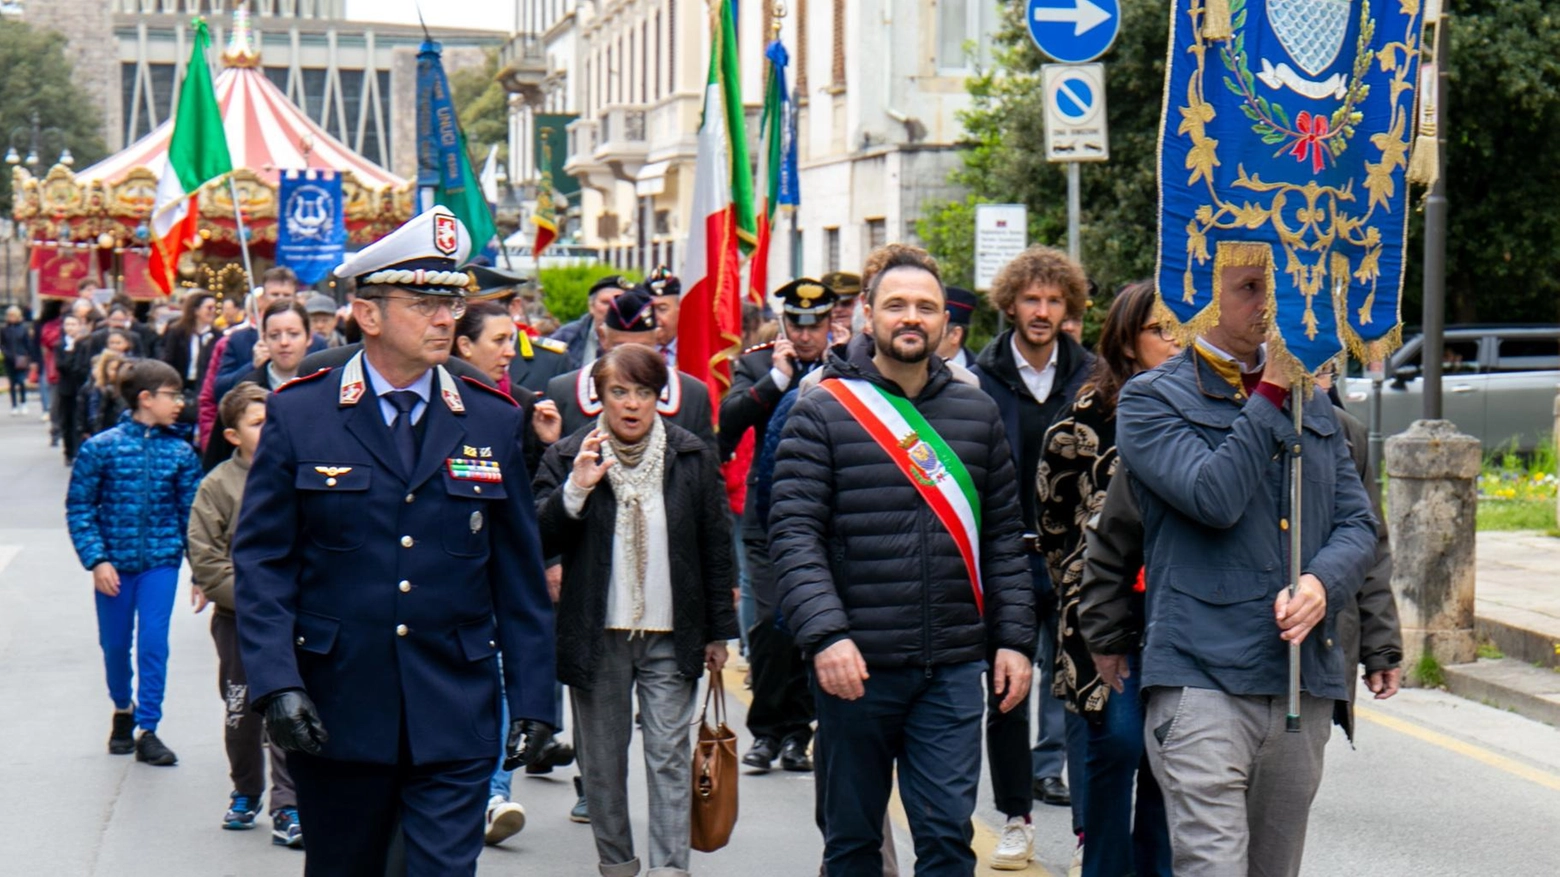 La manifestazione di Montecatini e le parole del sindaco Baroncini "Questa giornata non sia solo occasione di ricordo ma anche stimolo per capire che quello che è successo non deve accadere mai più".